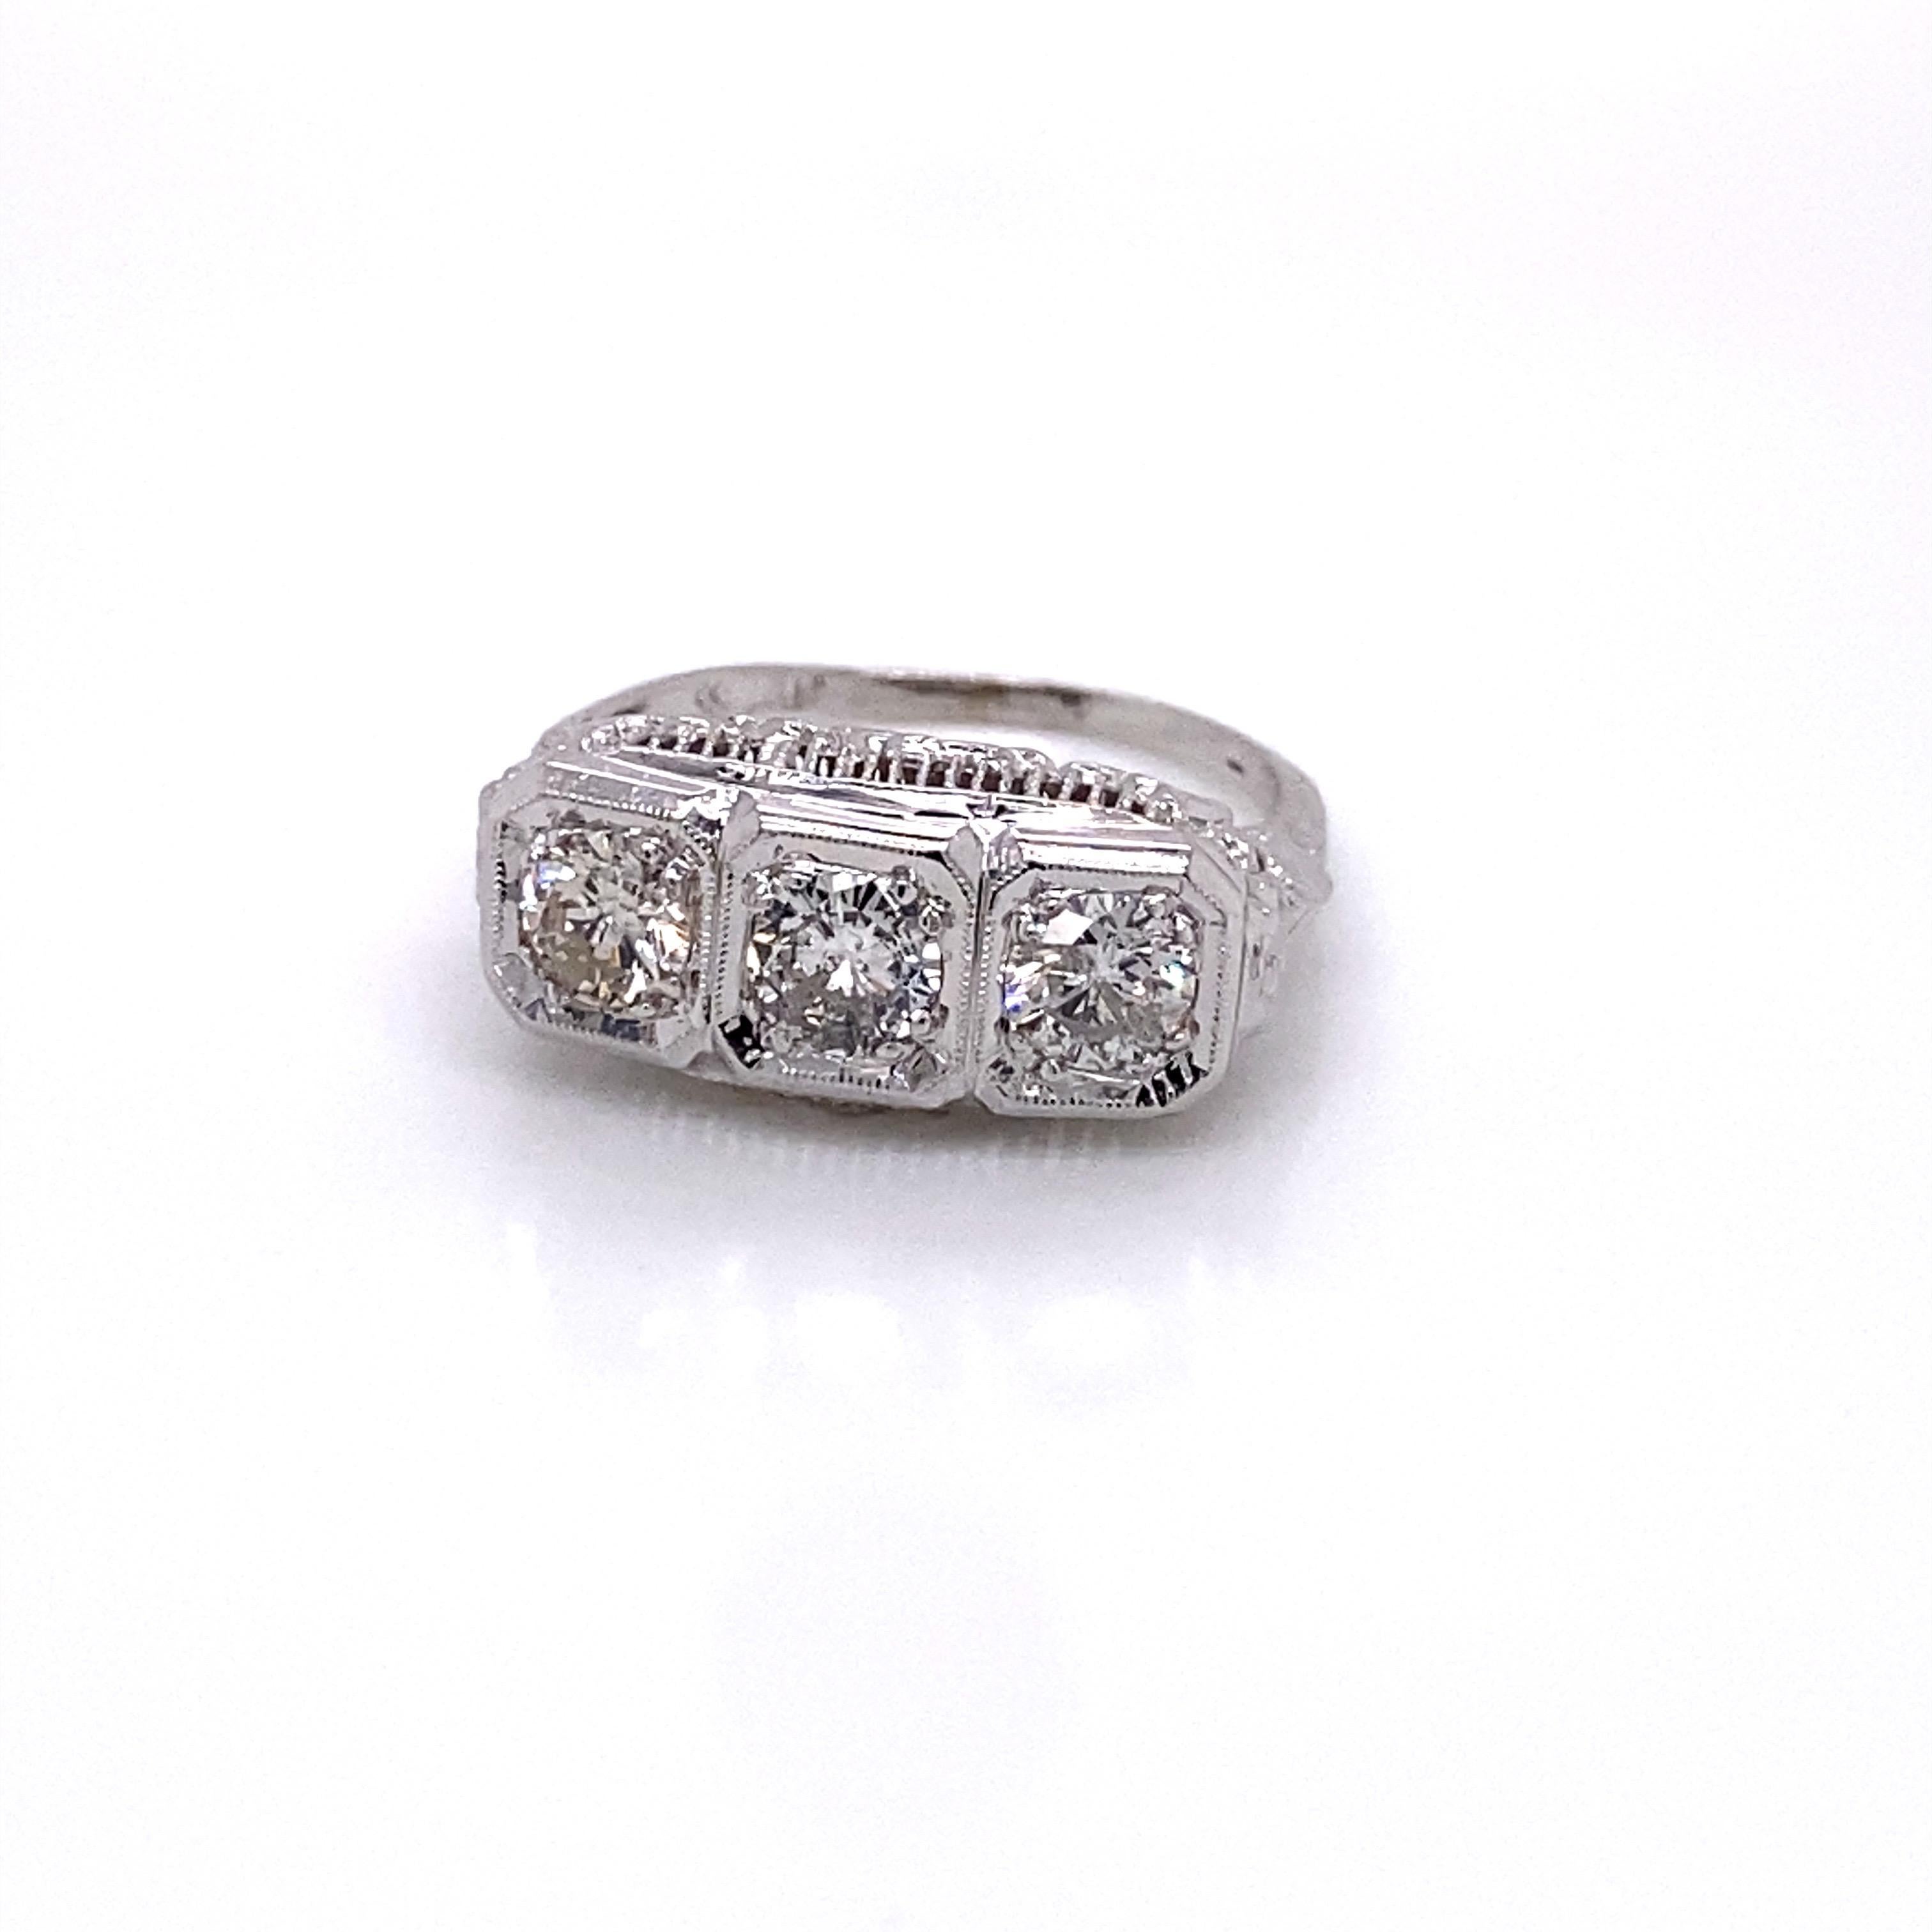 Vintage 1950's 14KW Gold 3 Stone Diamond Filigree Ring 1,00ct - Retro 1950's filigranen Ring enthält 3 runde Diamanten, die insgesamt etwa 1,00ct wiegen. Die Diamanten haben die Farbe H-I und die Reinheit I1. Das Profil der Fassung ist filigran